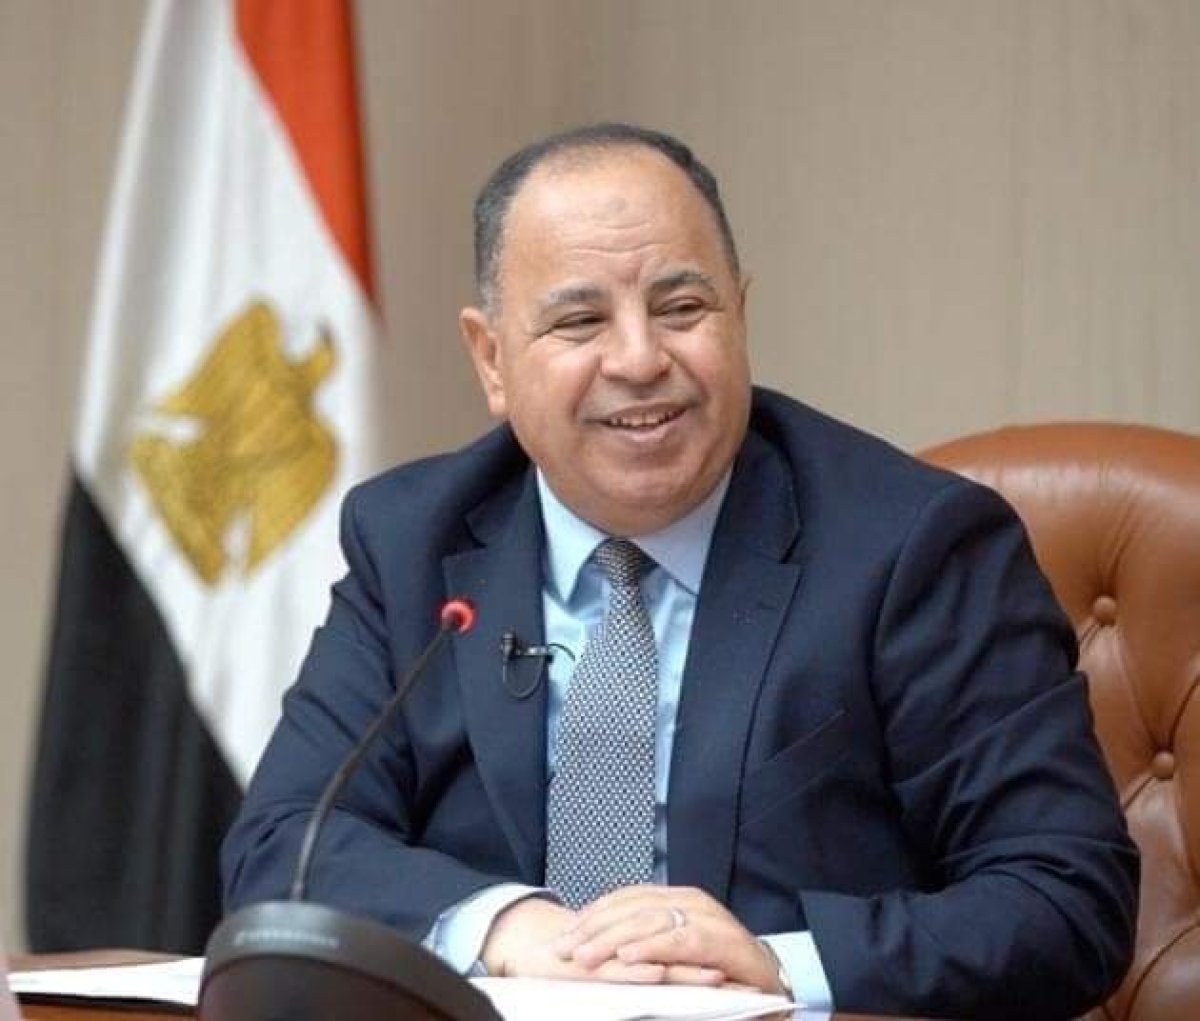  المالية: الرئيس السيسى يوجه بالإسراع في تحقيق حلم المصريين بالتأمين الصحي الشامل لكل أفراد الأسرة